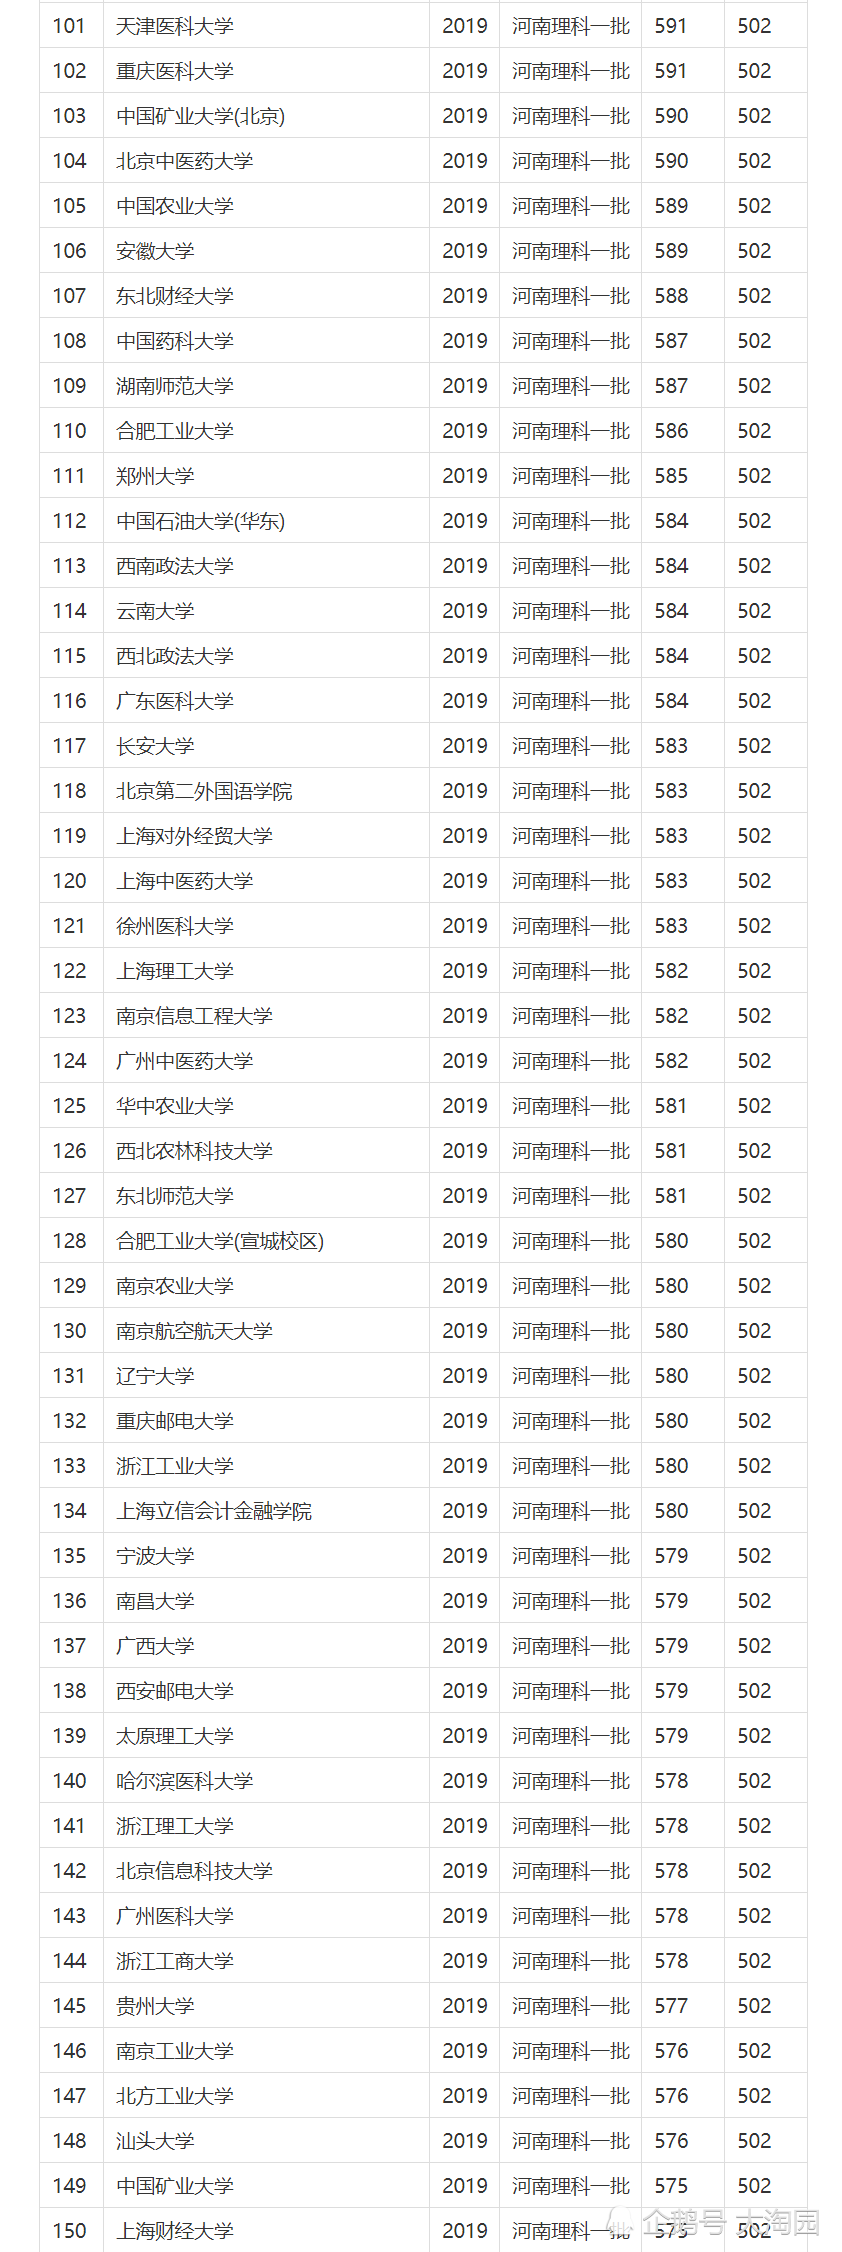 大学录取分数排名_2019年中国大学录取分数排名发布:各省本科第一批录